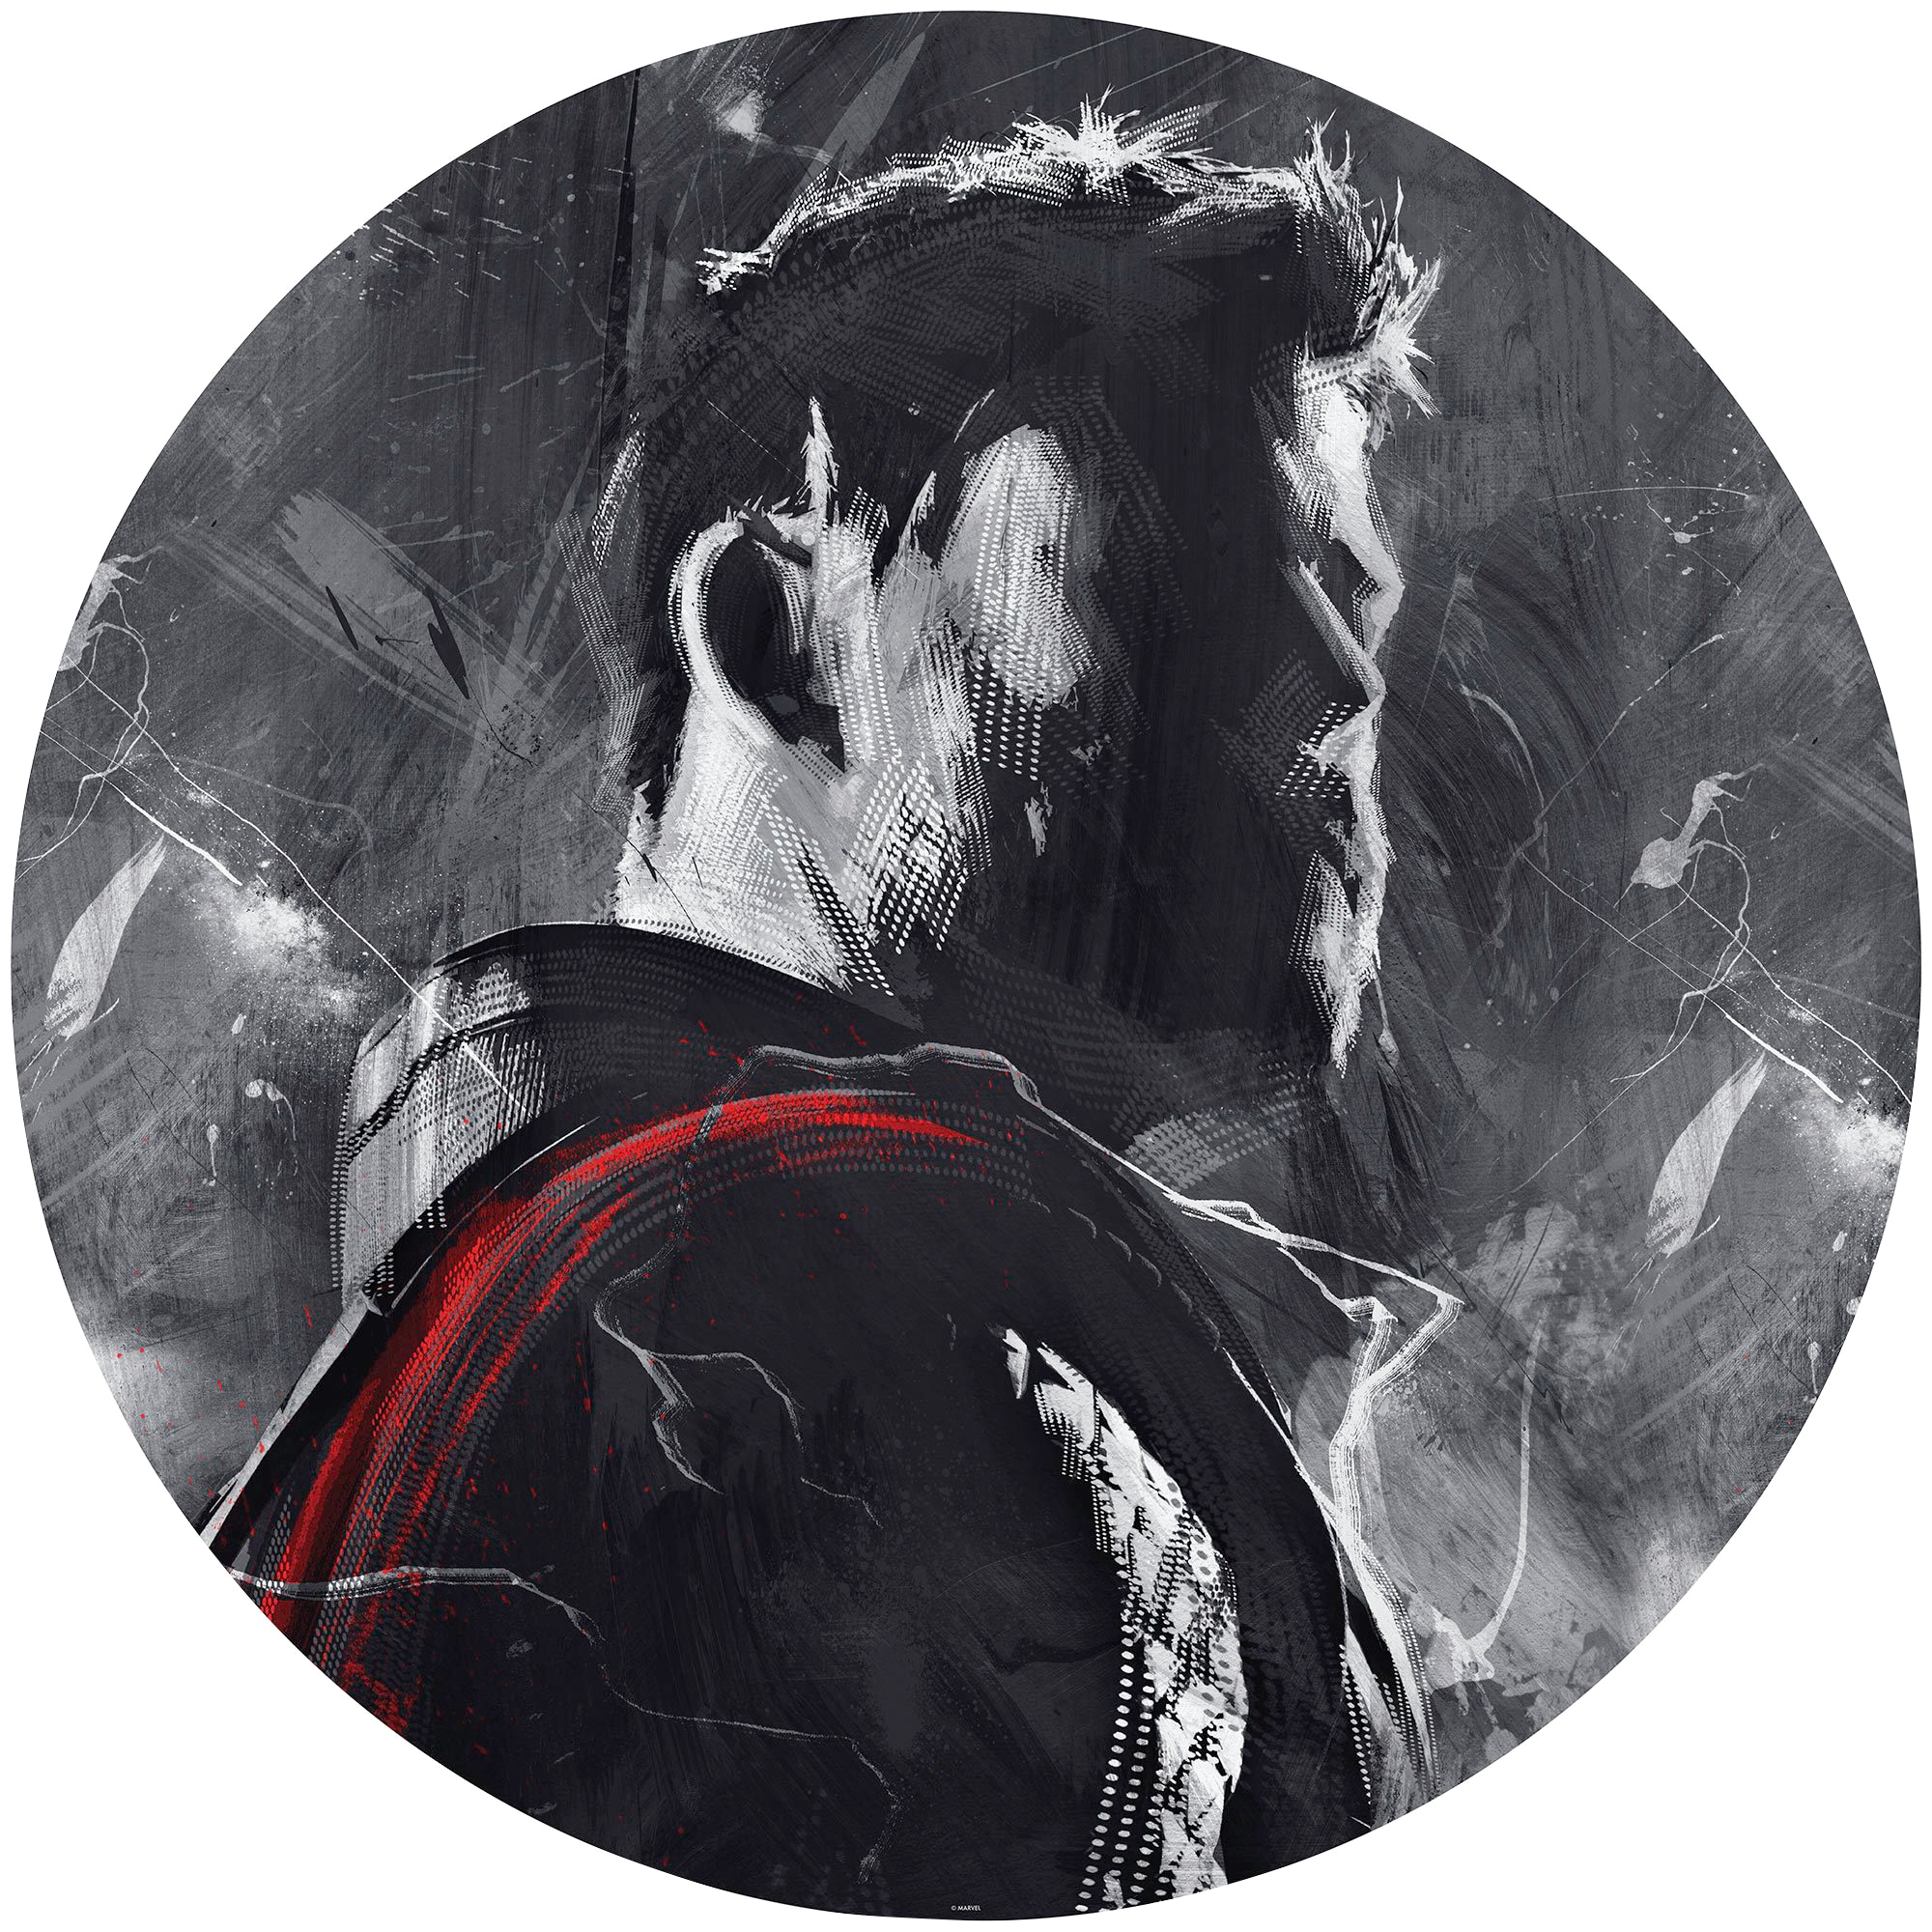 Fototapete »Avengers Painting Thor«, 125x125 cm (Breite x Höhe), rund und selbstklebend